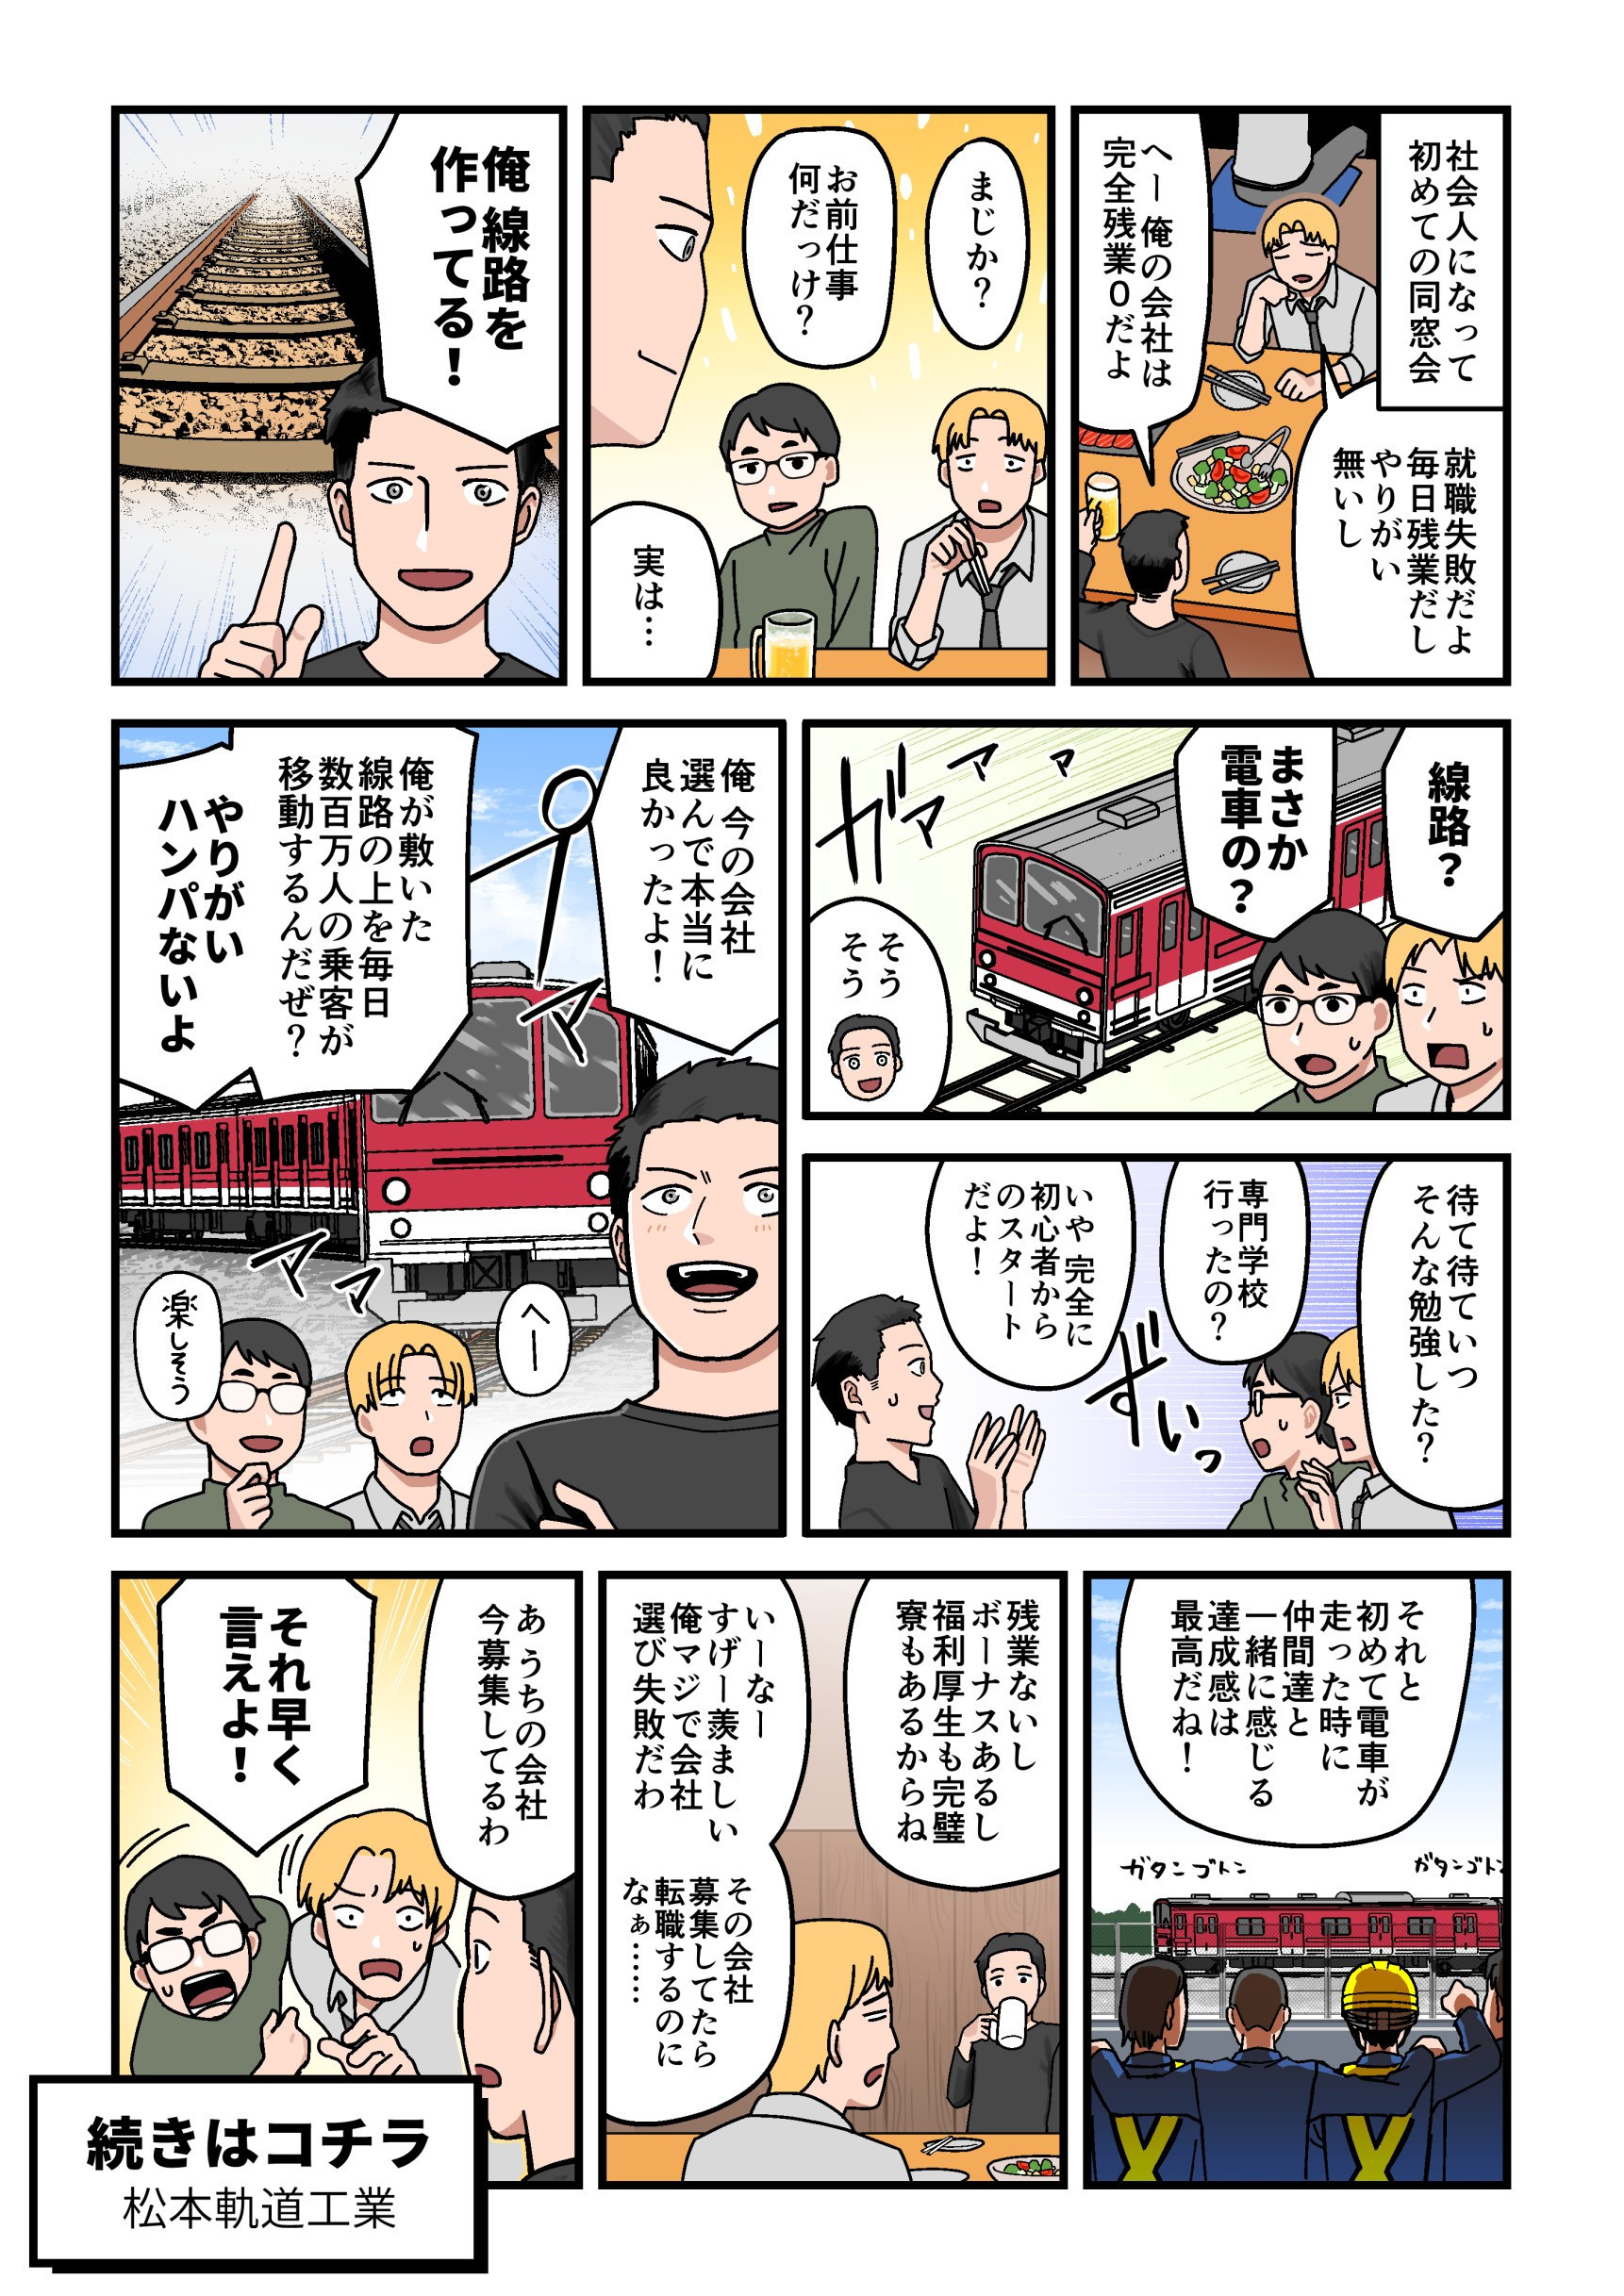 漫画で分かる松本軌道工業